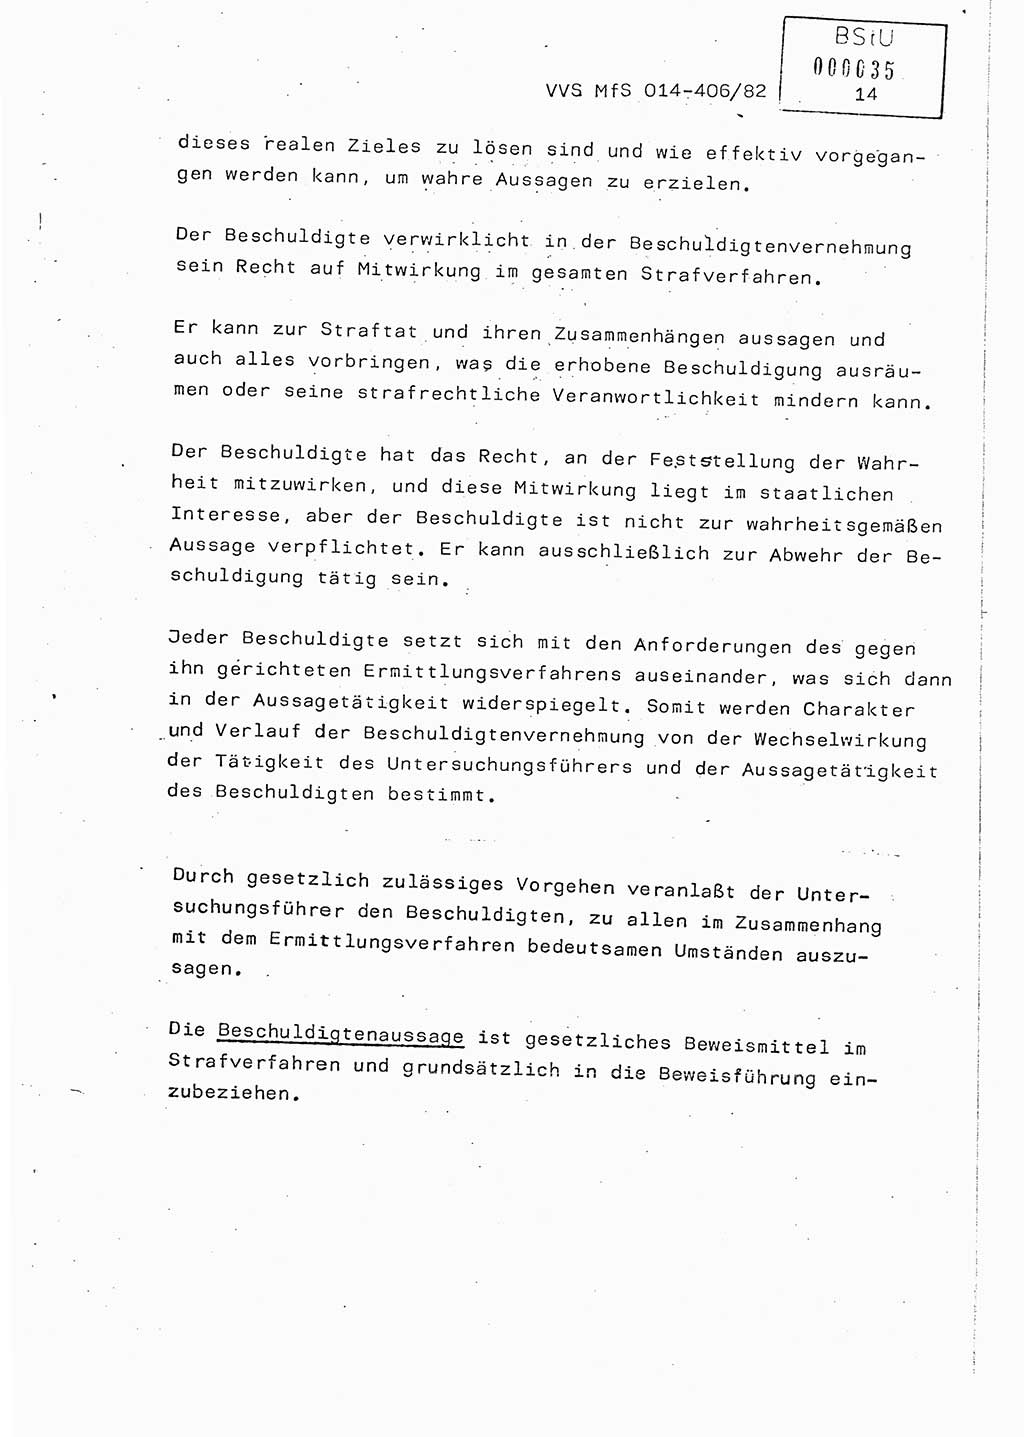 Lektion Ministerium für Staatssicherheit (MfS) [Deutsche Demokratische Republik (DDR)], Hauptabteilung (HA) Ⅸ, Vertrauliche Verschlußsache (VVS) o014-406/82, Berlin 1982, Seite 14 (Lekt. MfS DDR HA Ⅸ VVS o014-406/82 1982, S. 14)